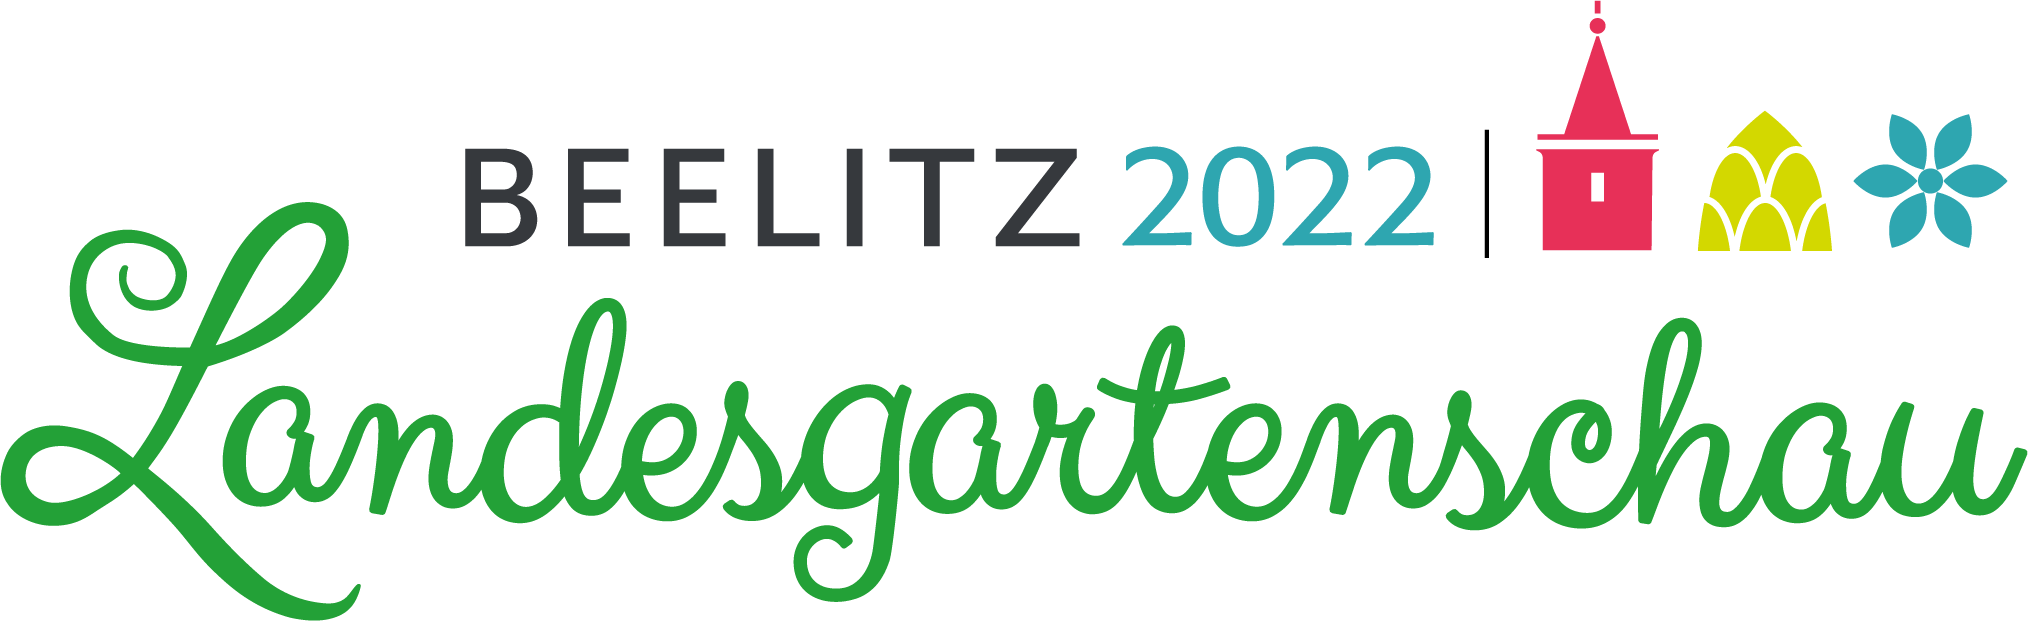 Partnerzy i sponsorzy_Laga Beelitz Logo_©Landesgartenschau Beelitz 2022